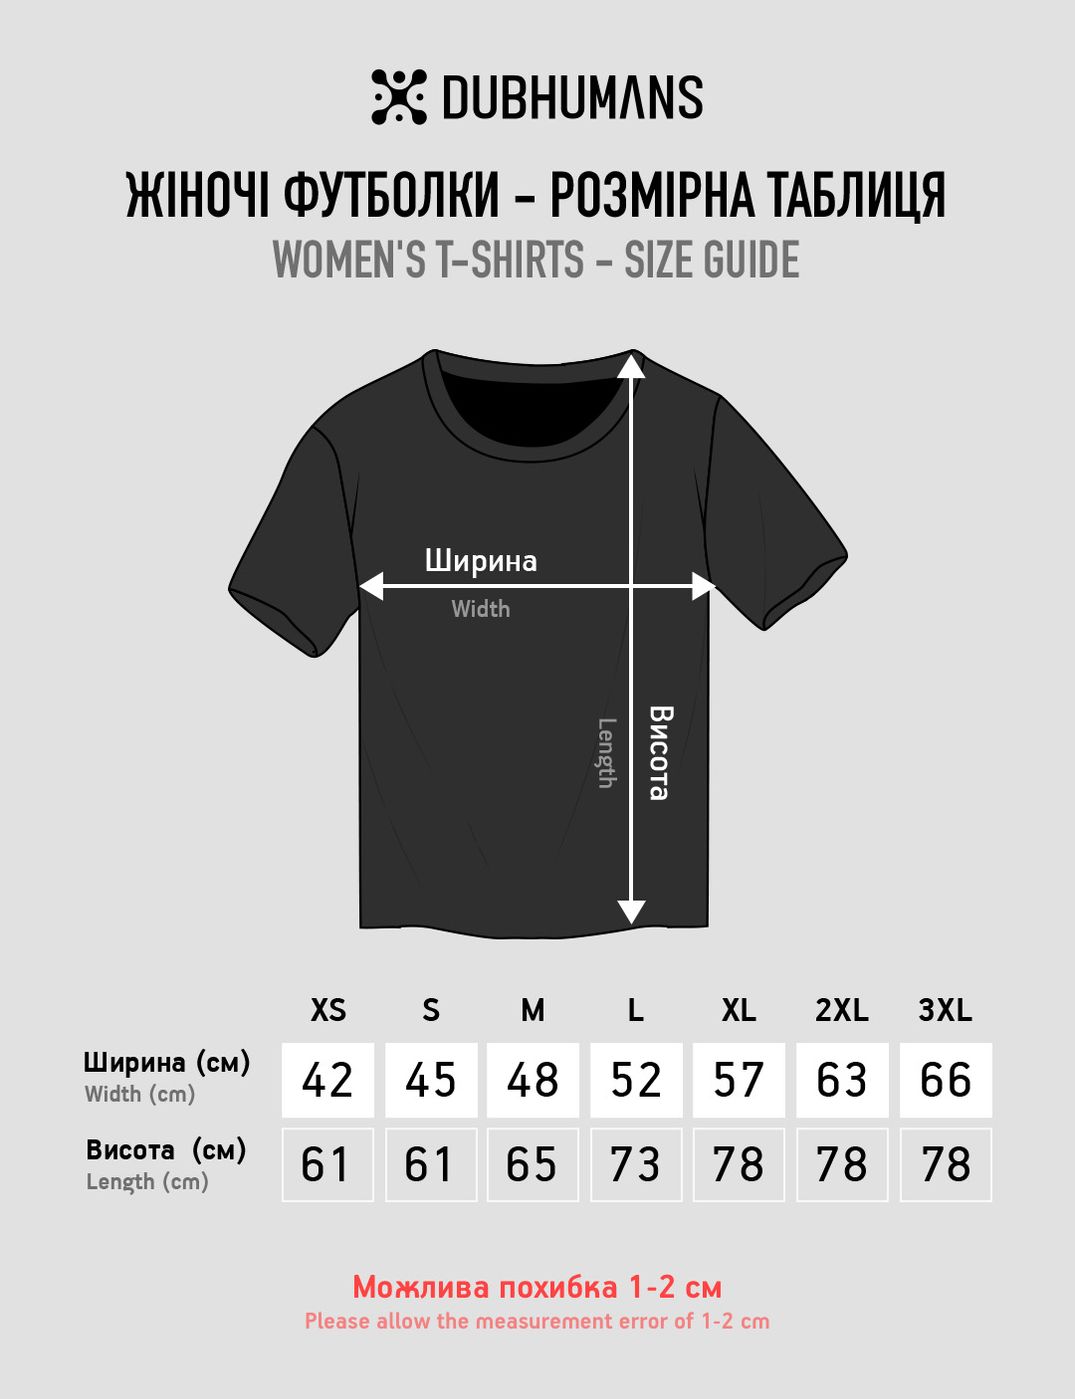 Women's T-shirt "Burning Kremlin Festival", Black, M